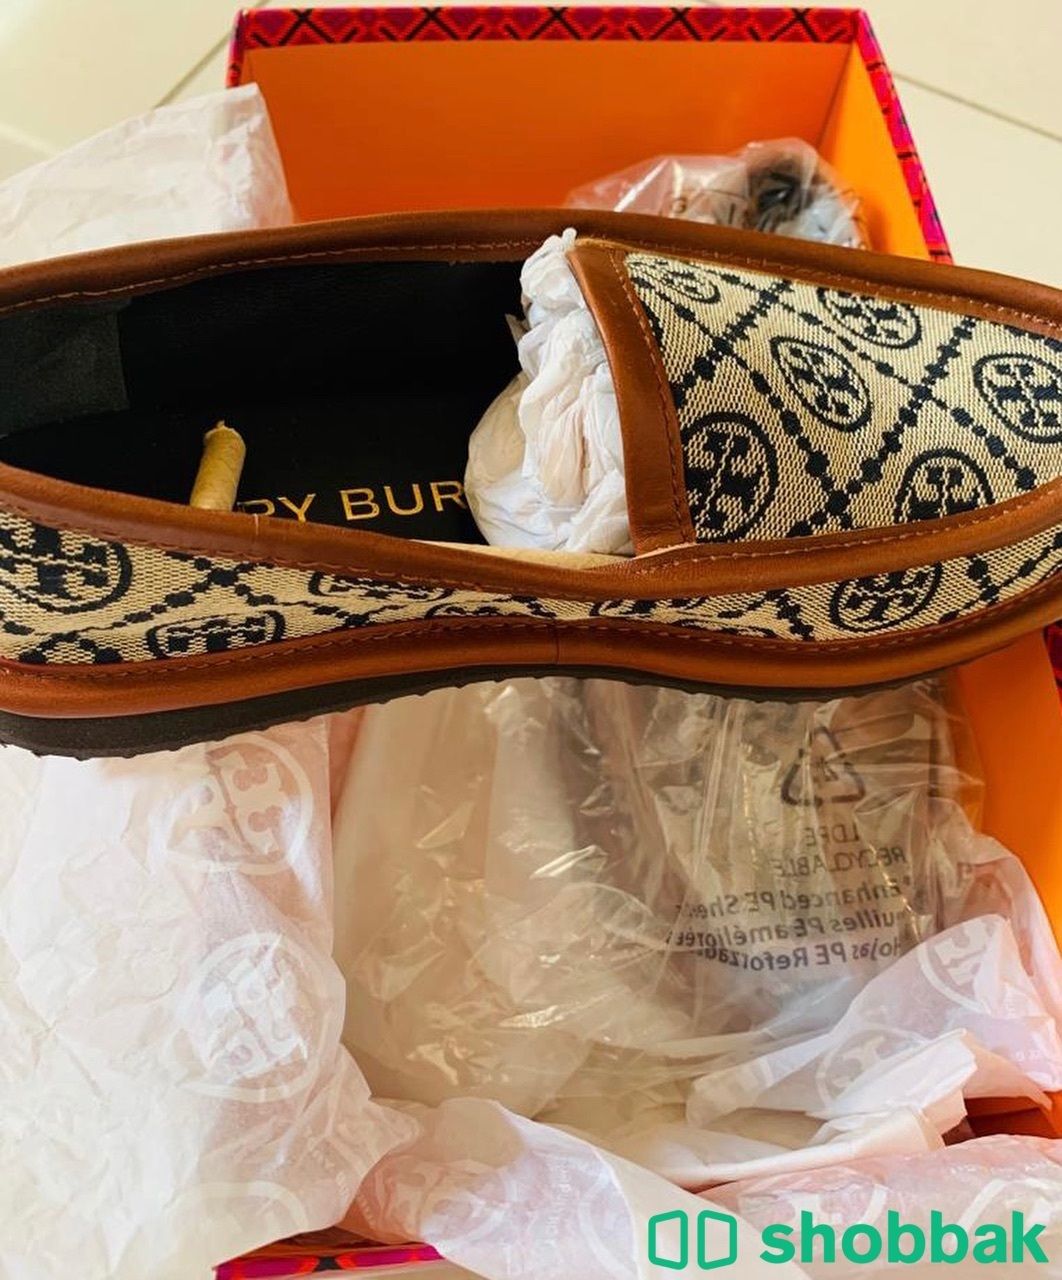 حذاء من ماركة توري بورش  Shobbak Saudi Arabia